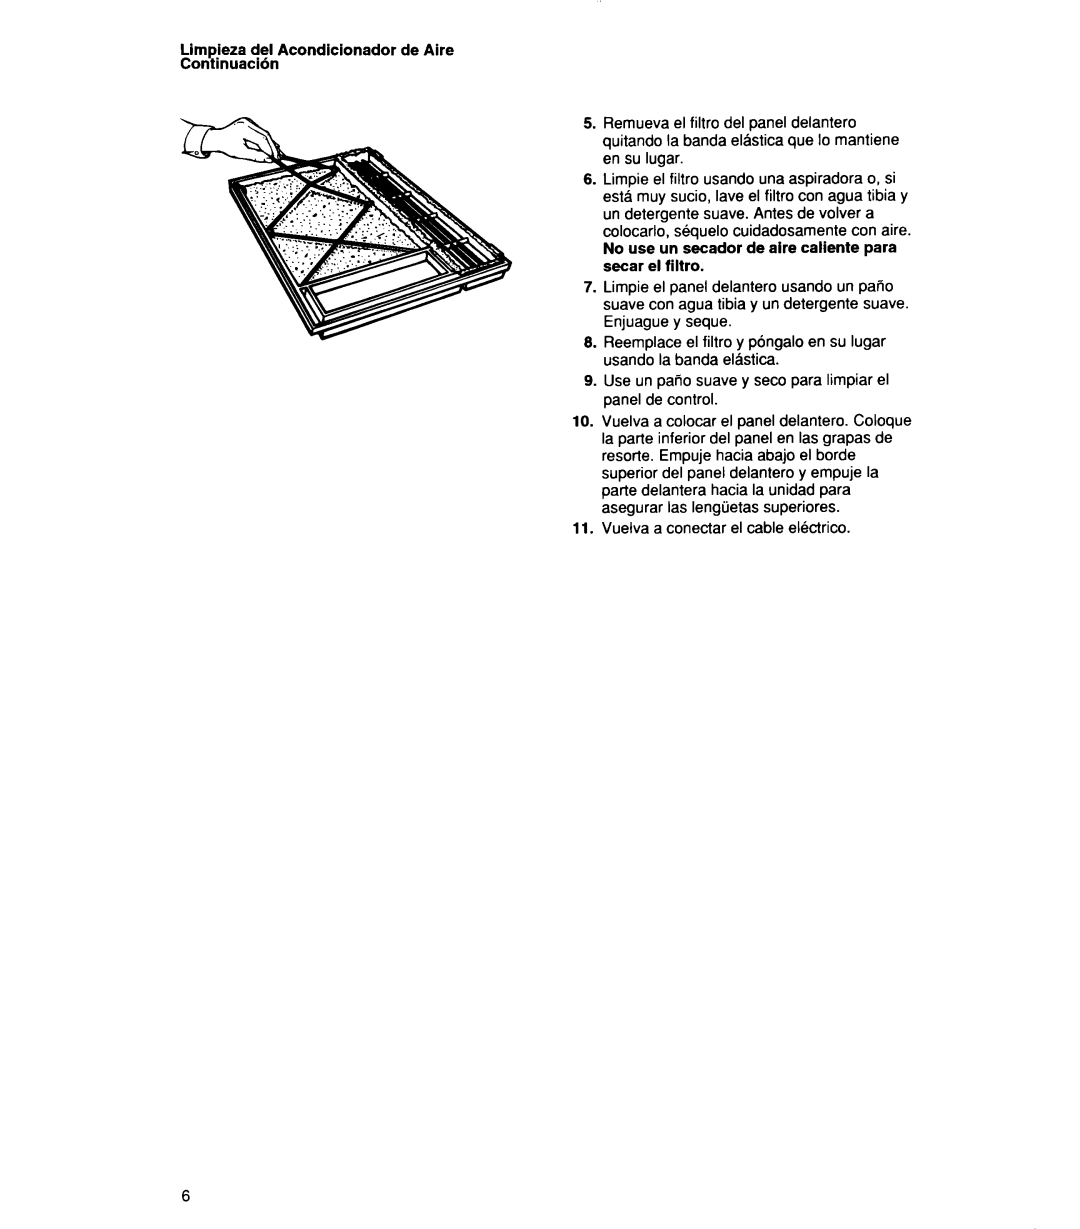 Whirlpool 1159801 manual Limpieza dei Acondicionador de Aire Continuacih, Vuelva a conectar el cable ekctrico 